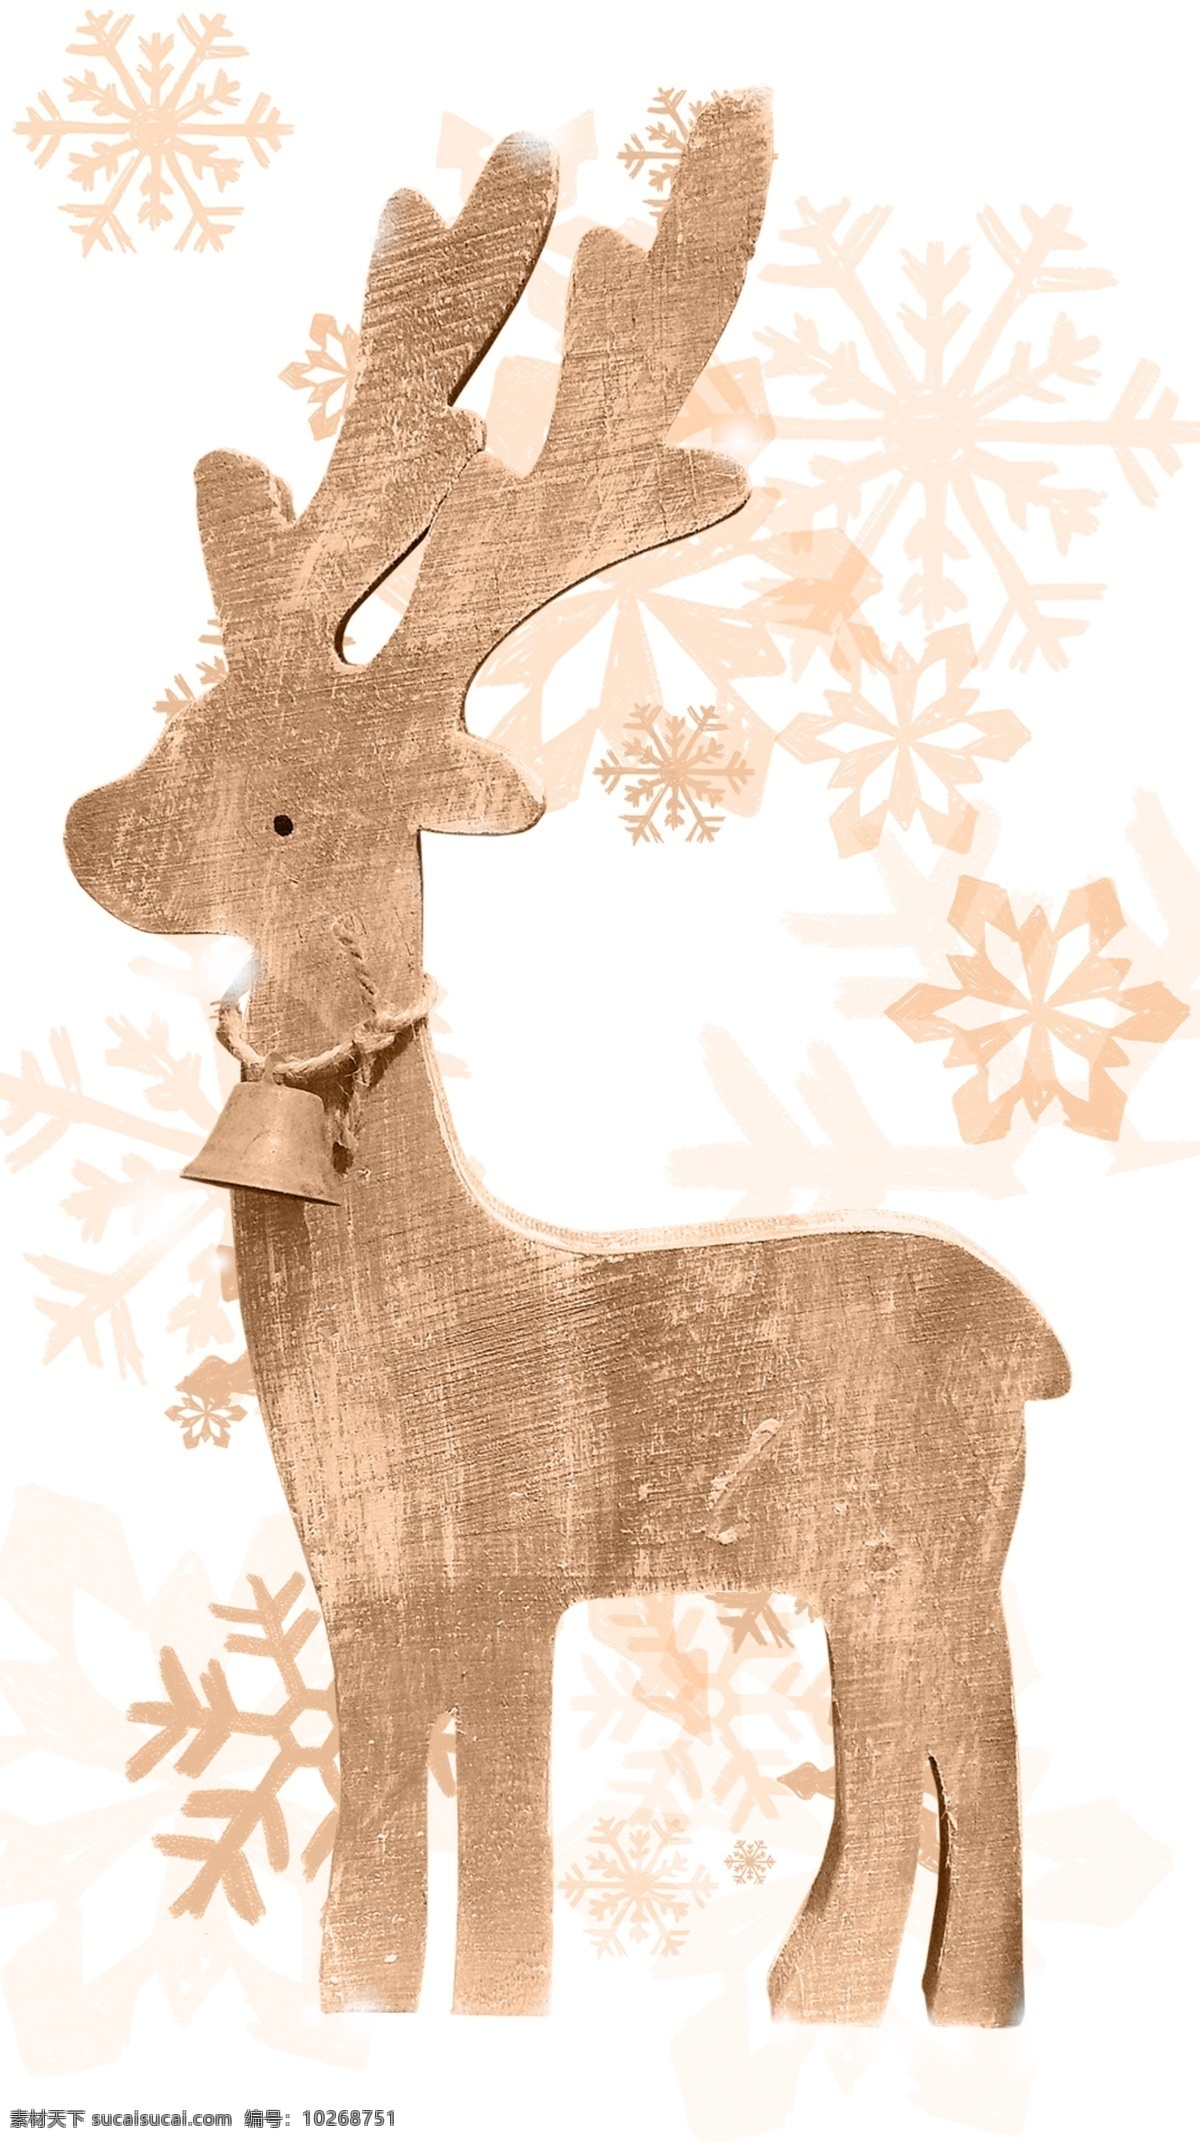 木材料和插图 可爱 雪 动物 麋鹿 鹿 圣诞 木头 一个 掌握